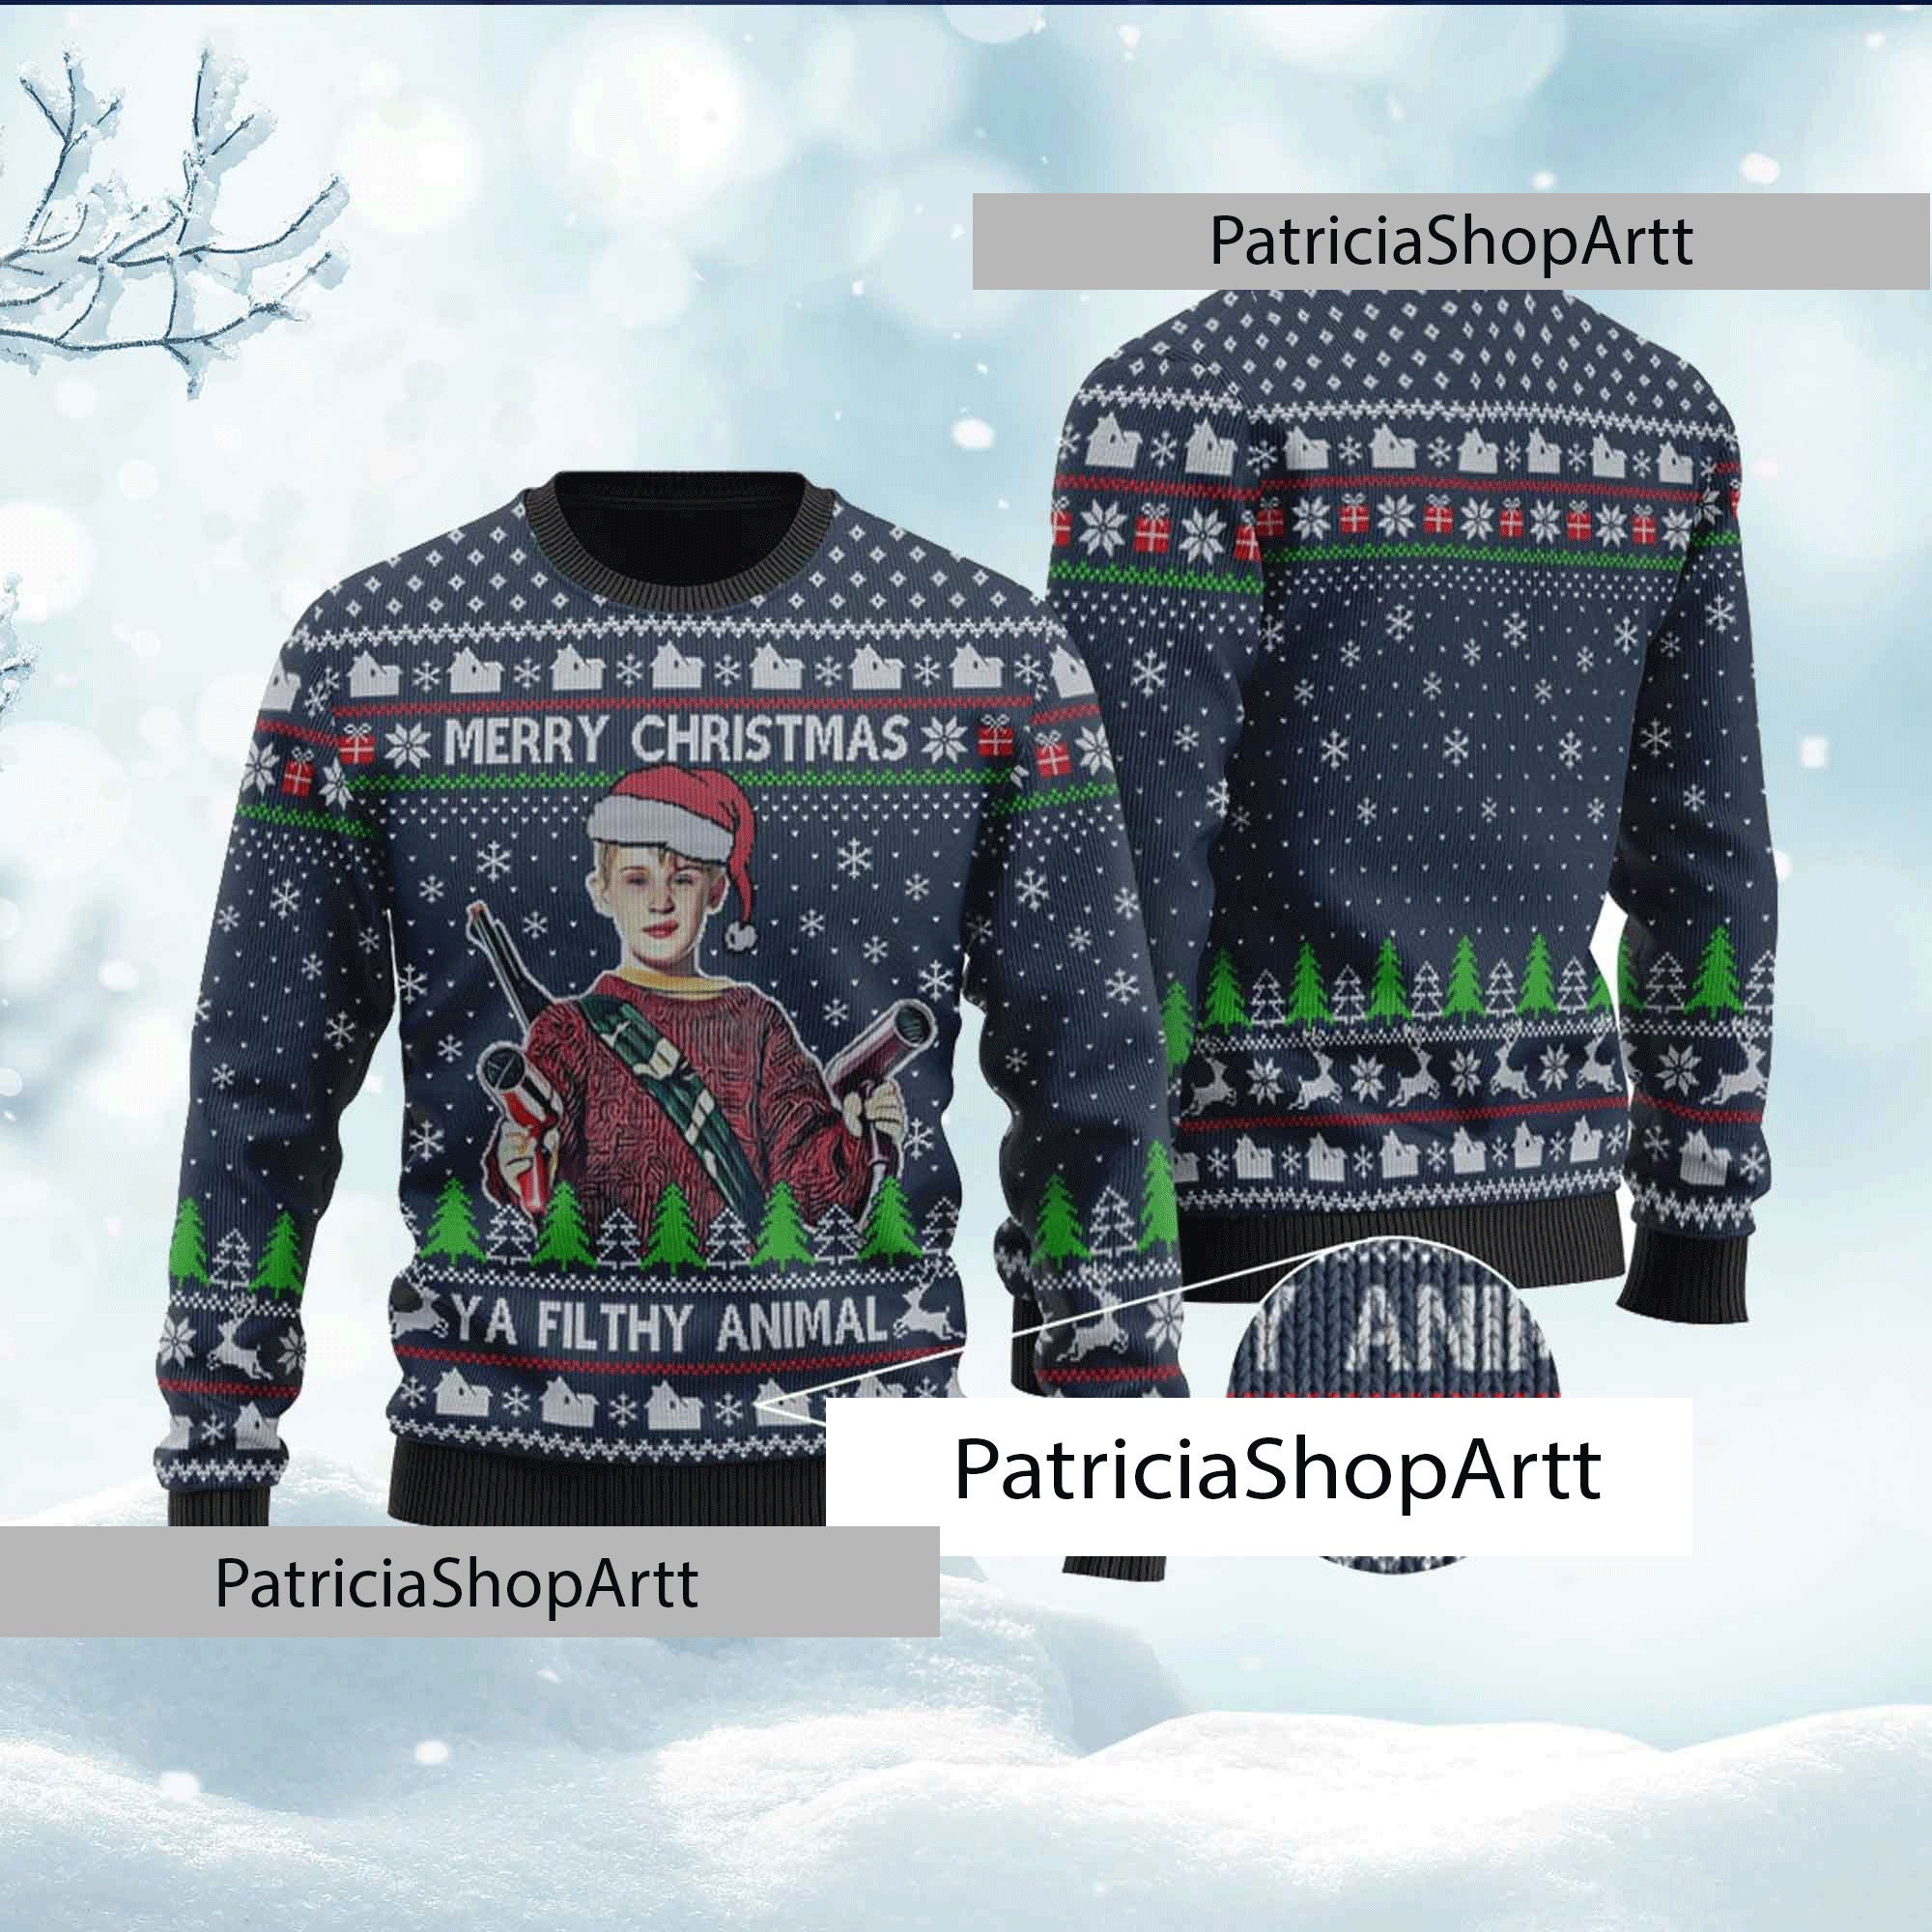 Discover Merry Christmas Ya Filthy Animal Sweater, a Filthy Animal Home Alone Ugly Sweater, Xmas Sweater, Funny Christmas Gift, Christmas Sweater